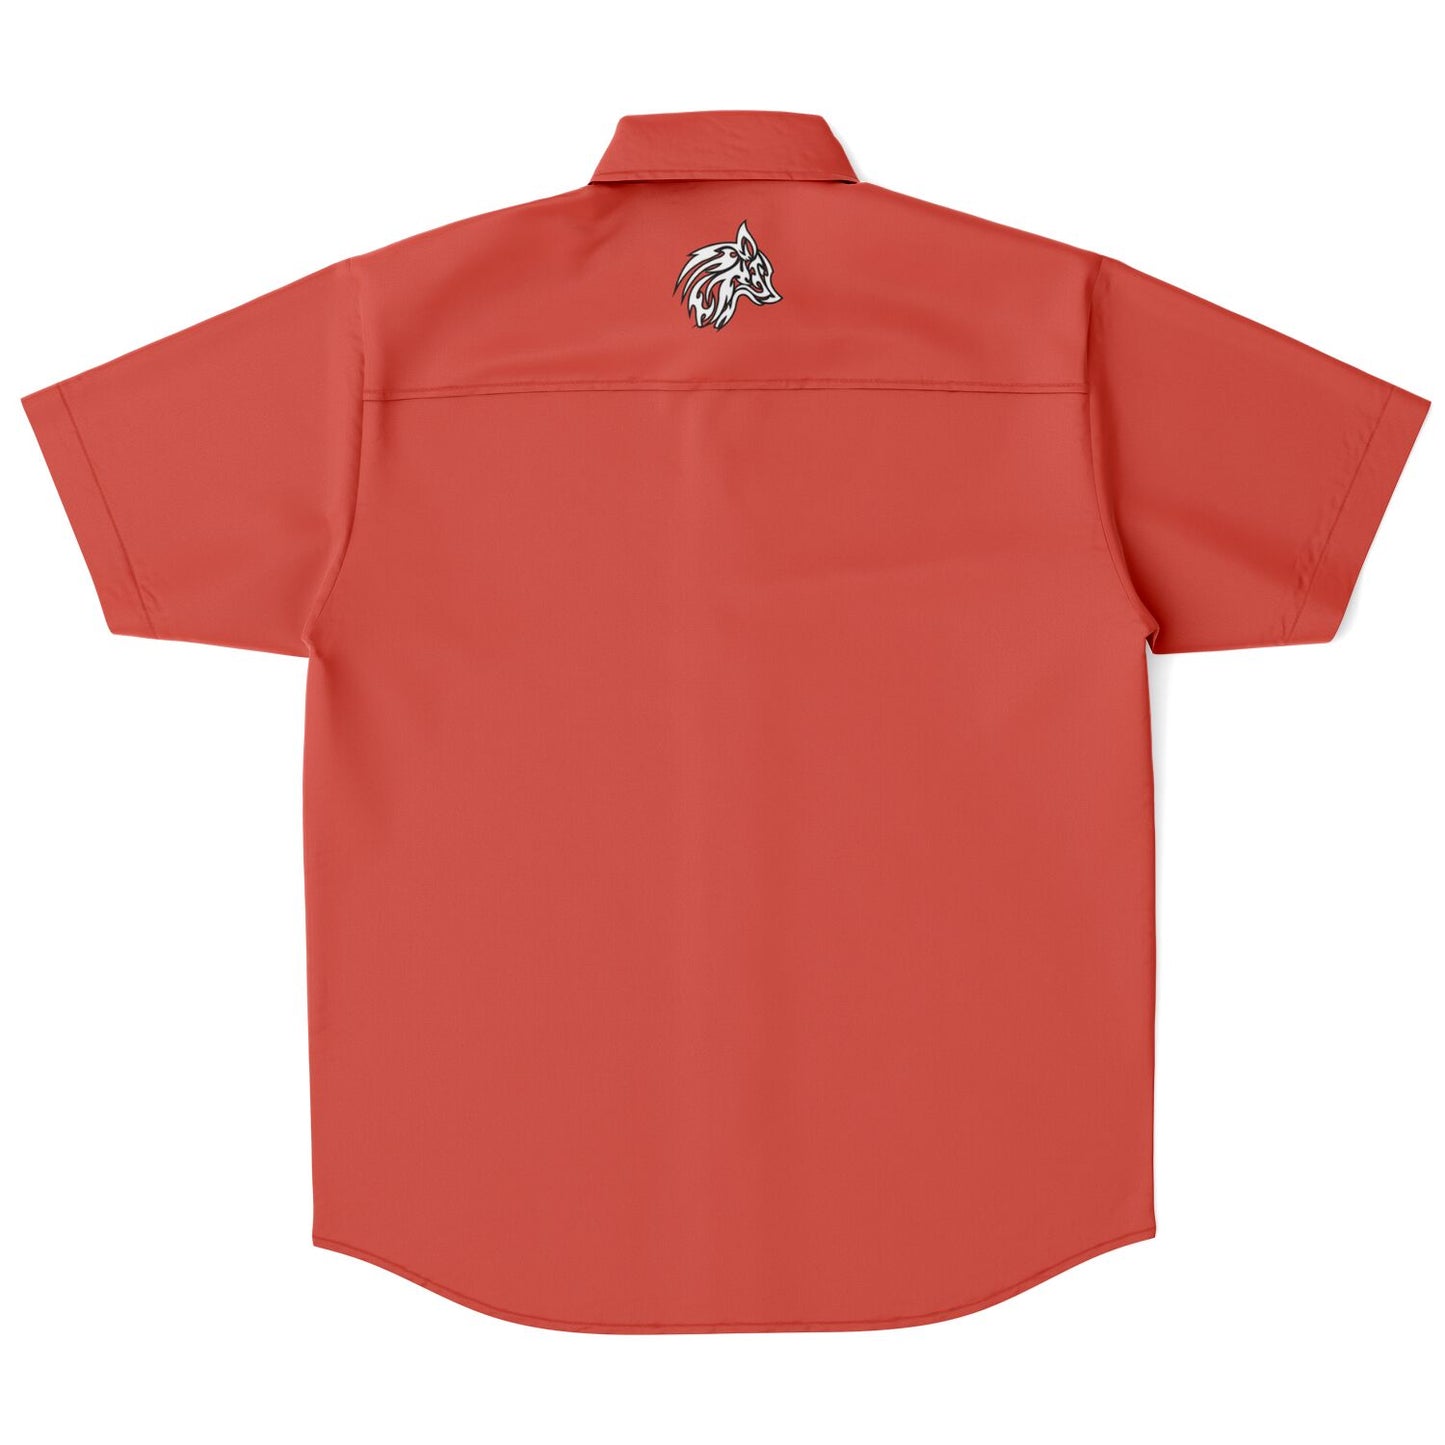 Crane v1 Short Sleeve Retro Bowling Shirt